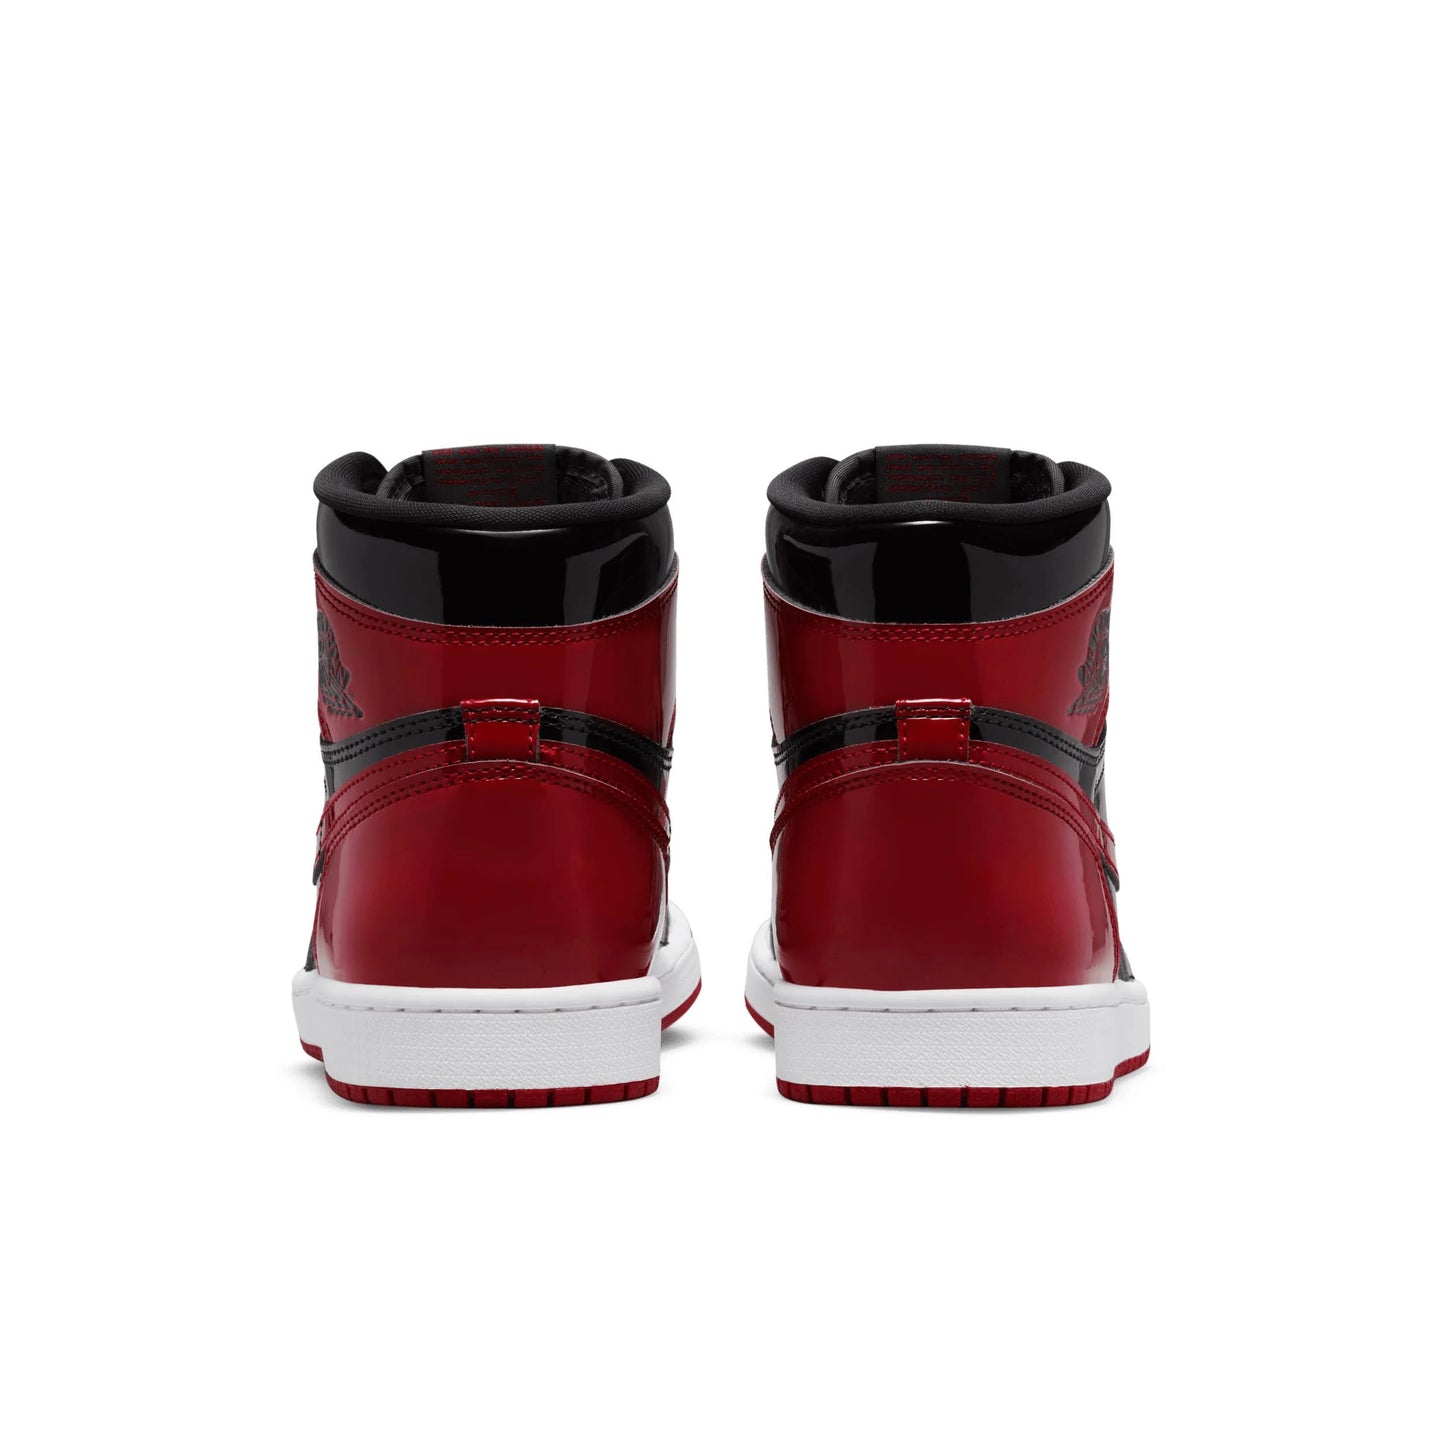 Air Jordan 1 High “Patent Bred”